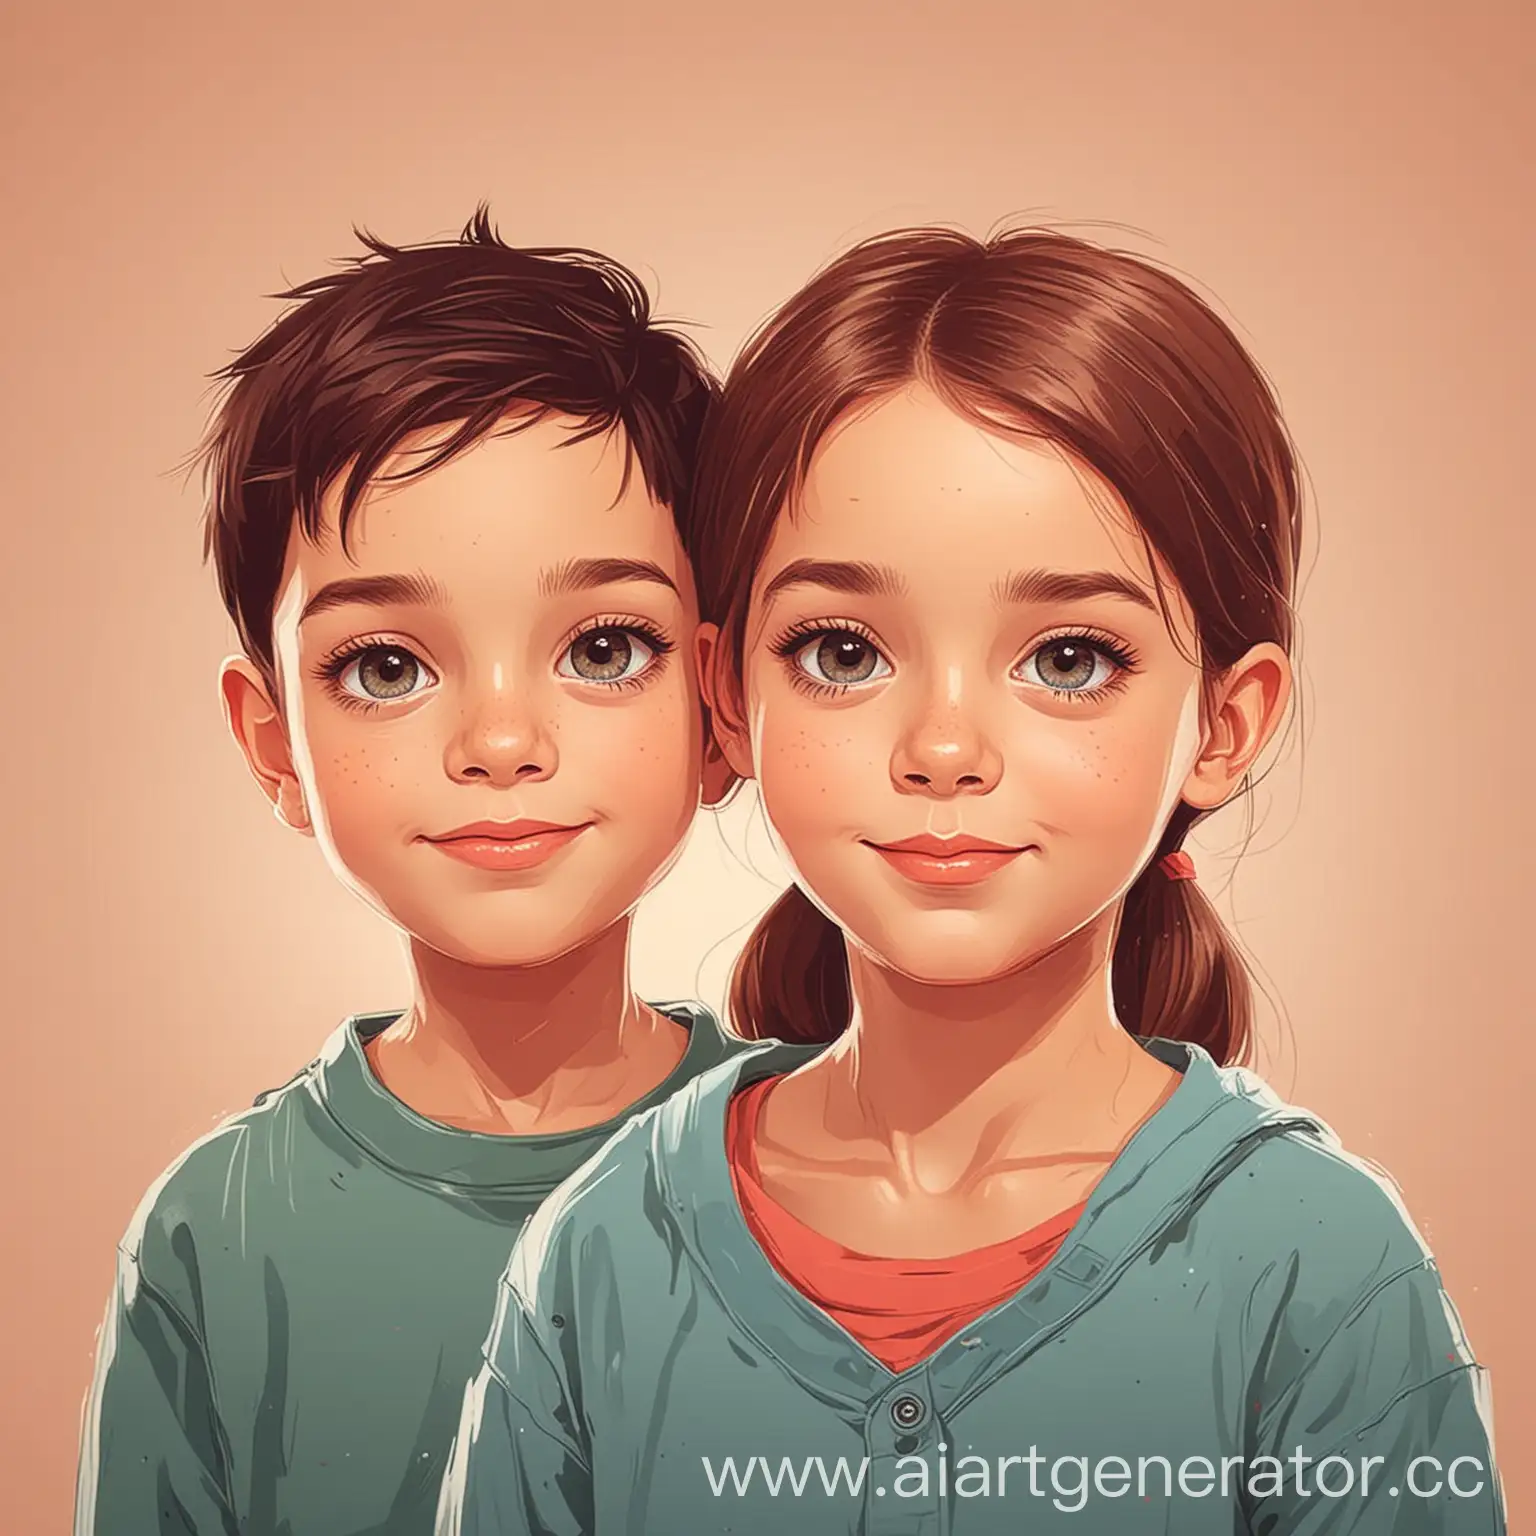 Портрет мальчика и девочки. Стиль детский векторный рисунок.